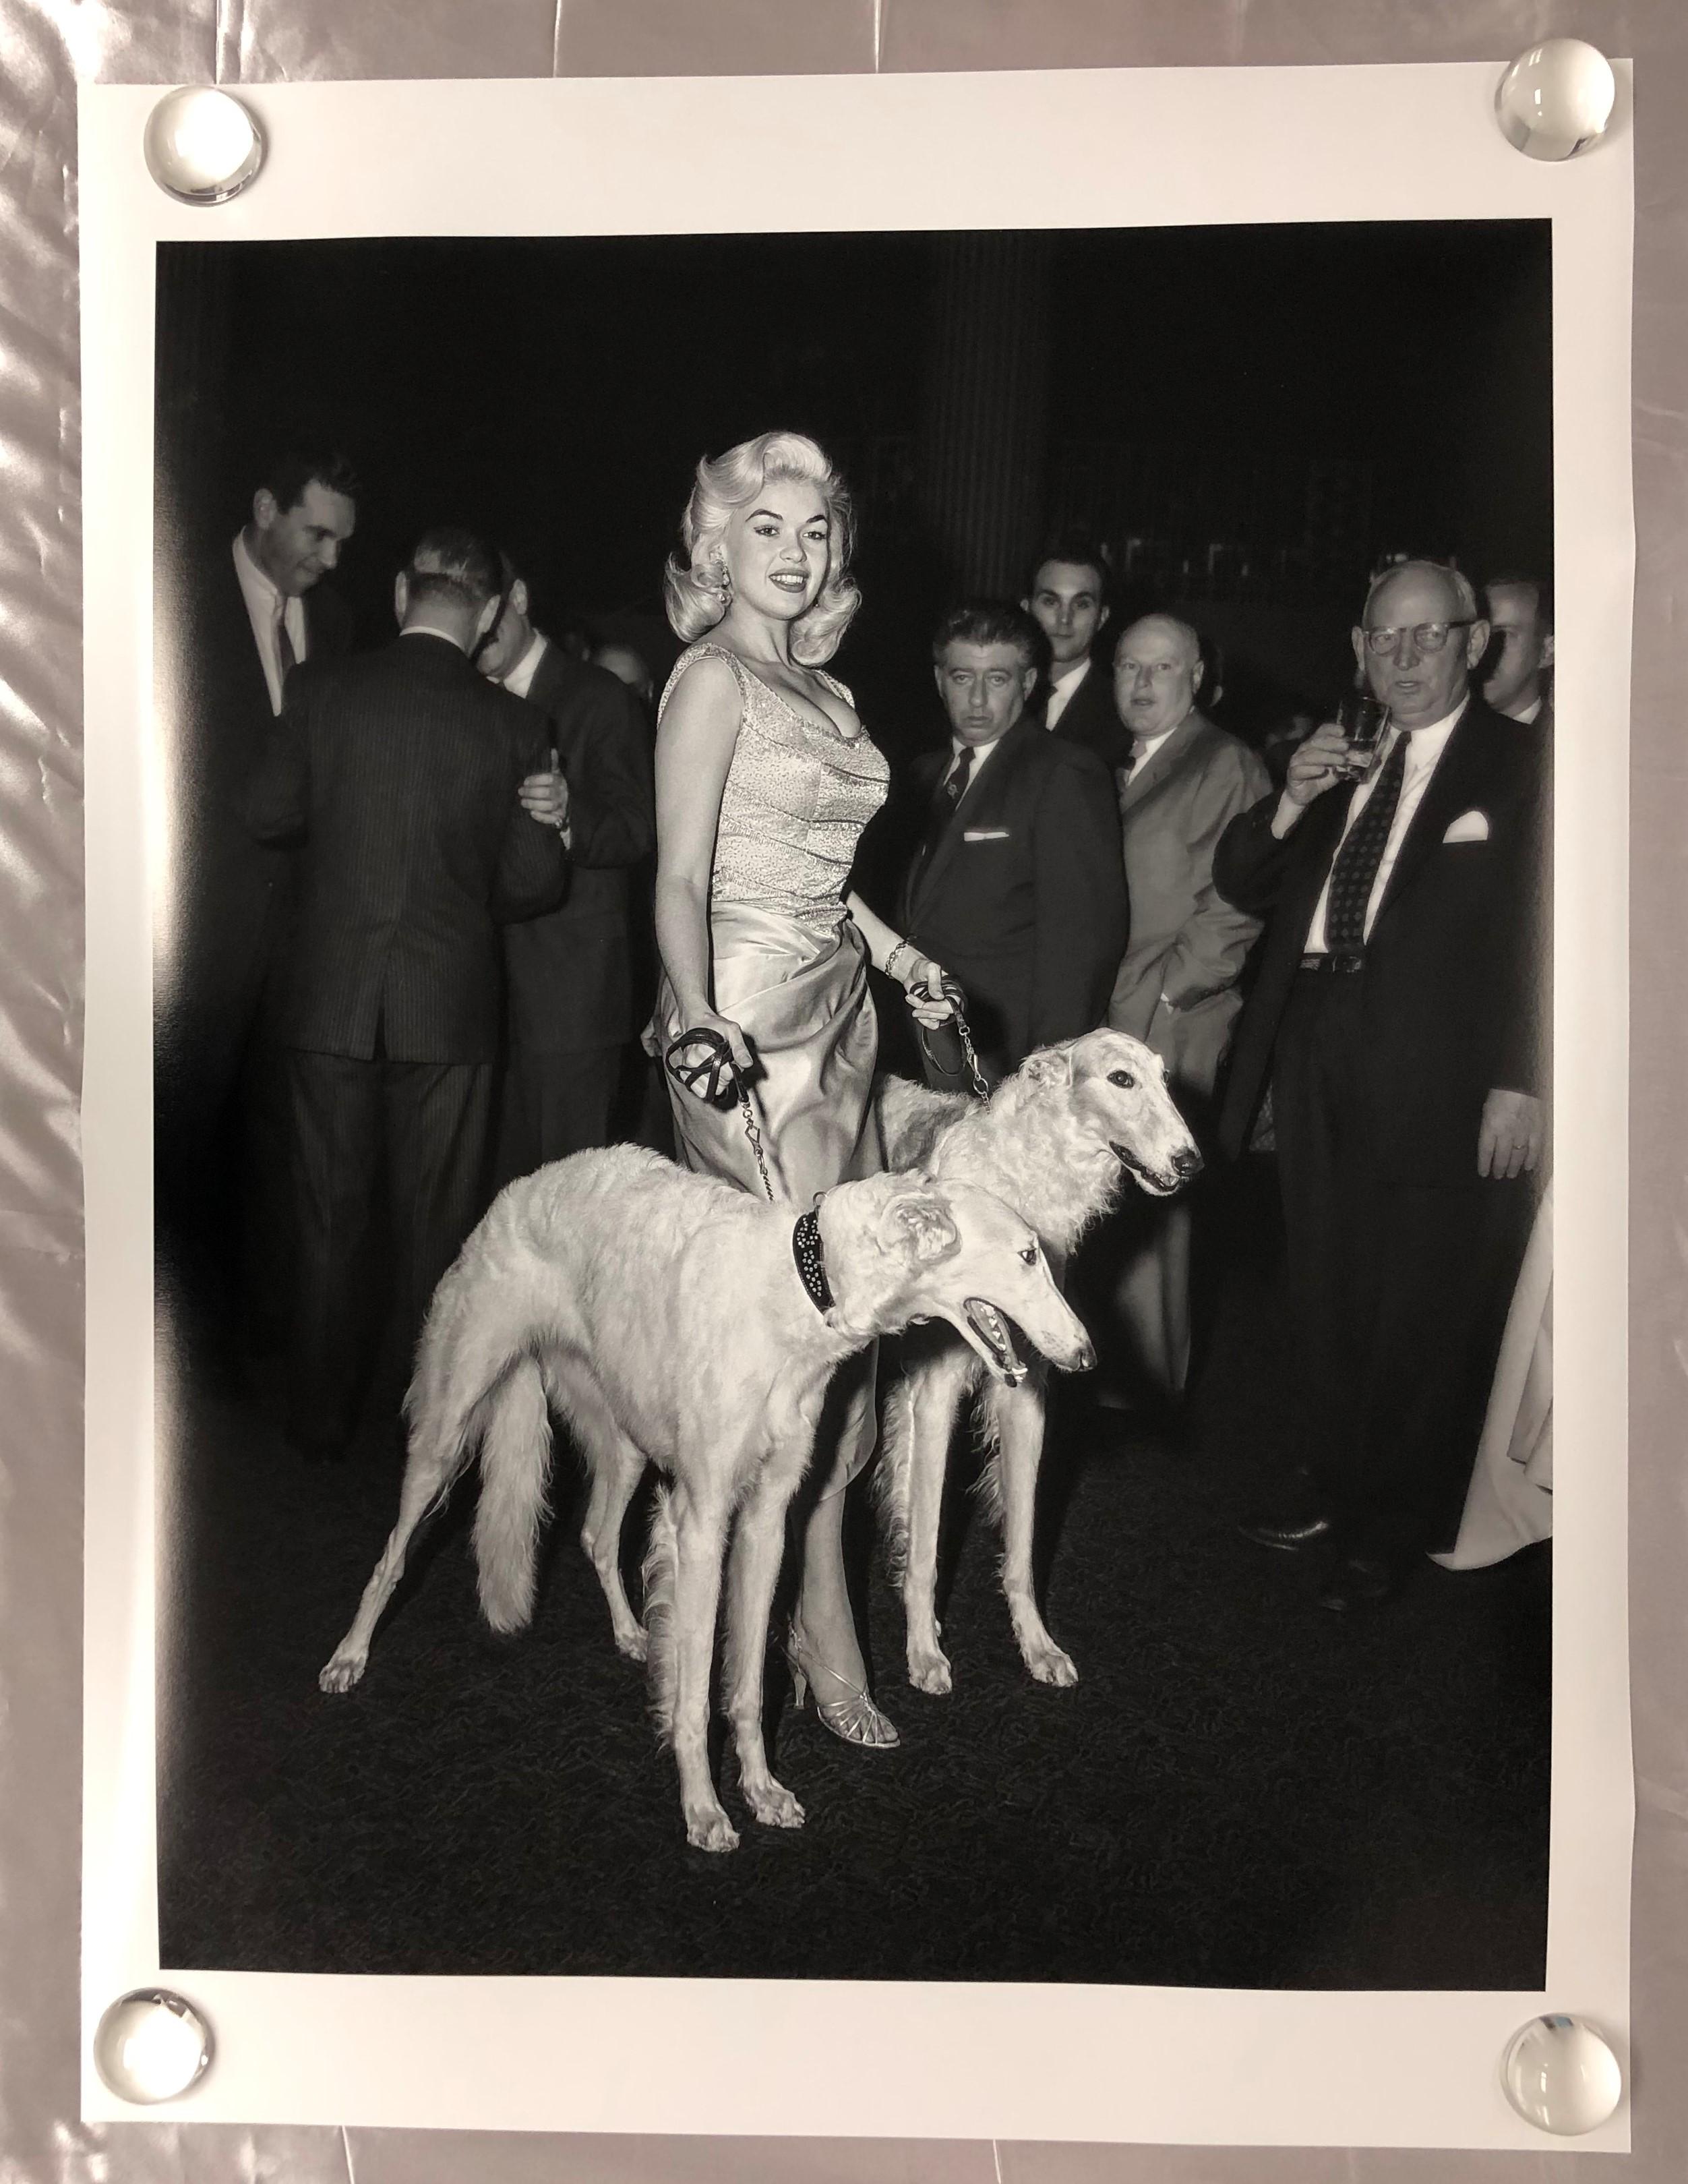 Jayne Mansfield with Seagrams Dogs (édition limitée à 10 exemplaires, n° 6/10) - 76,2 x 101,6 cm - Contemporain Photograph par Barry Kramer